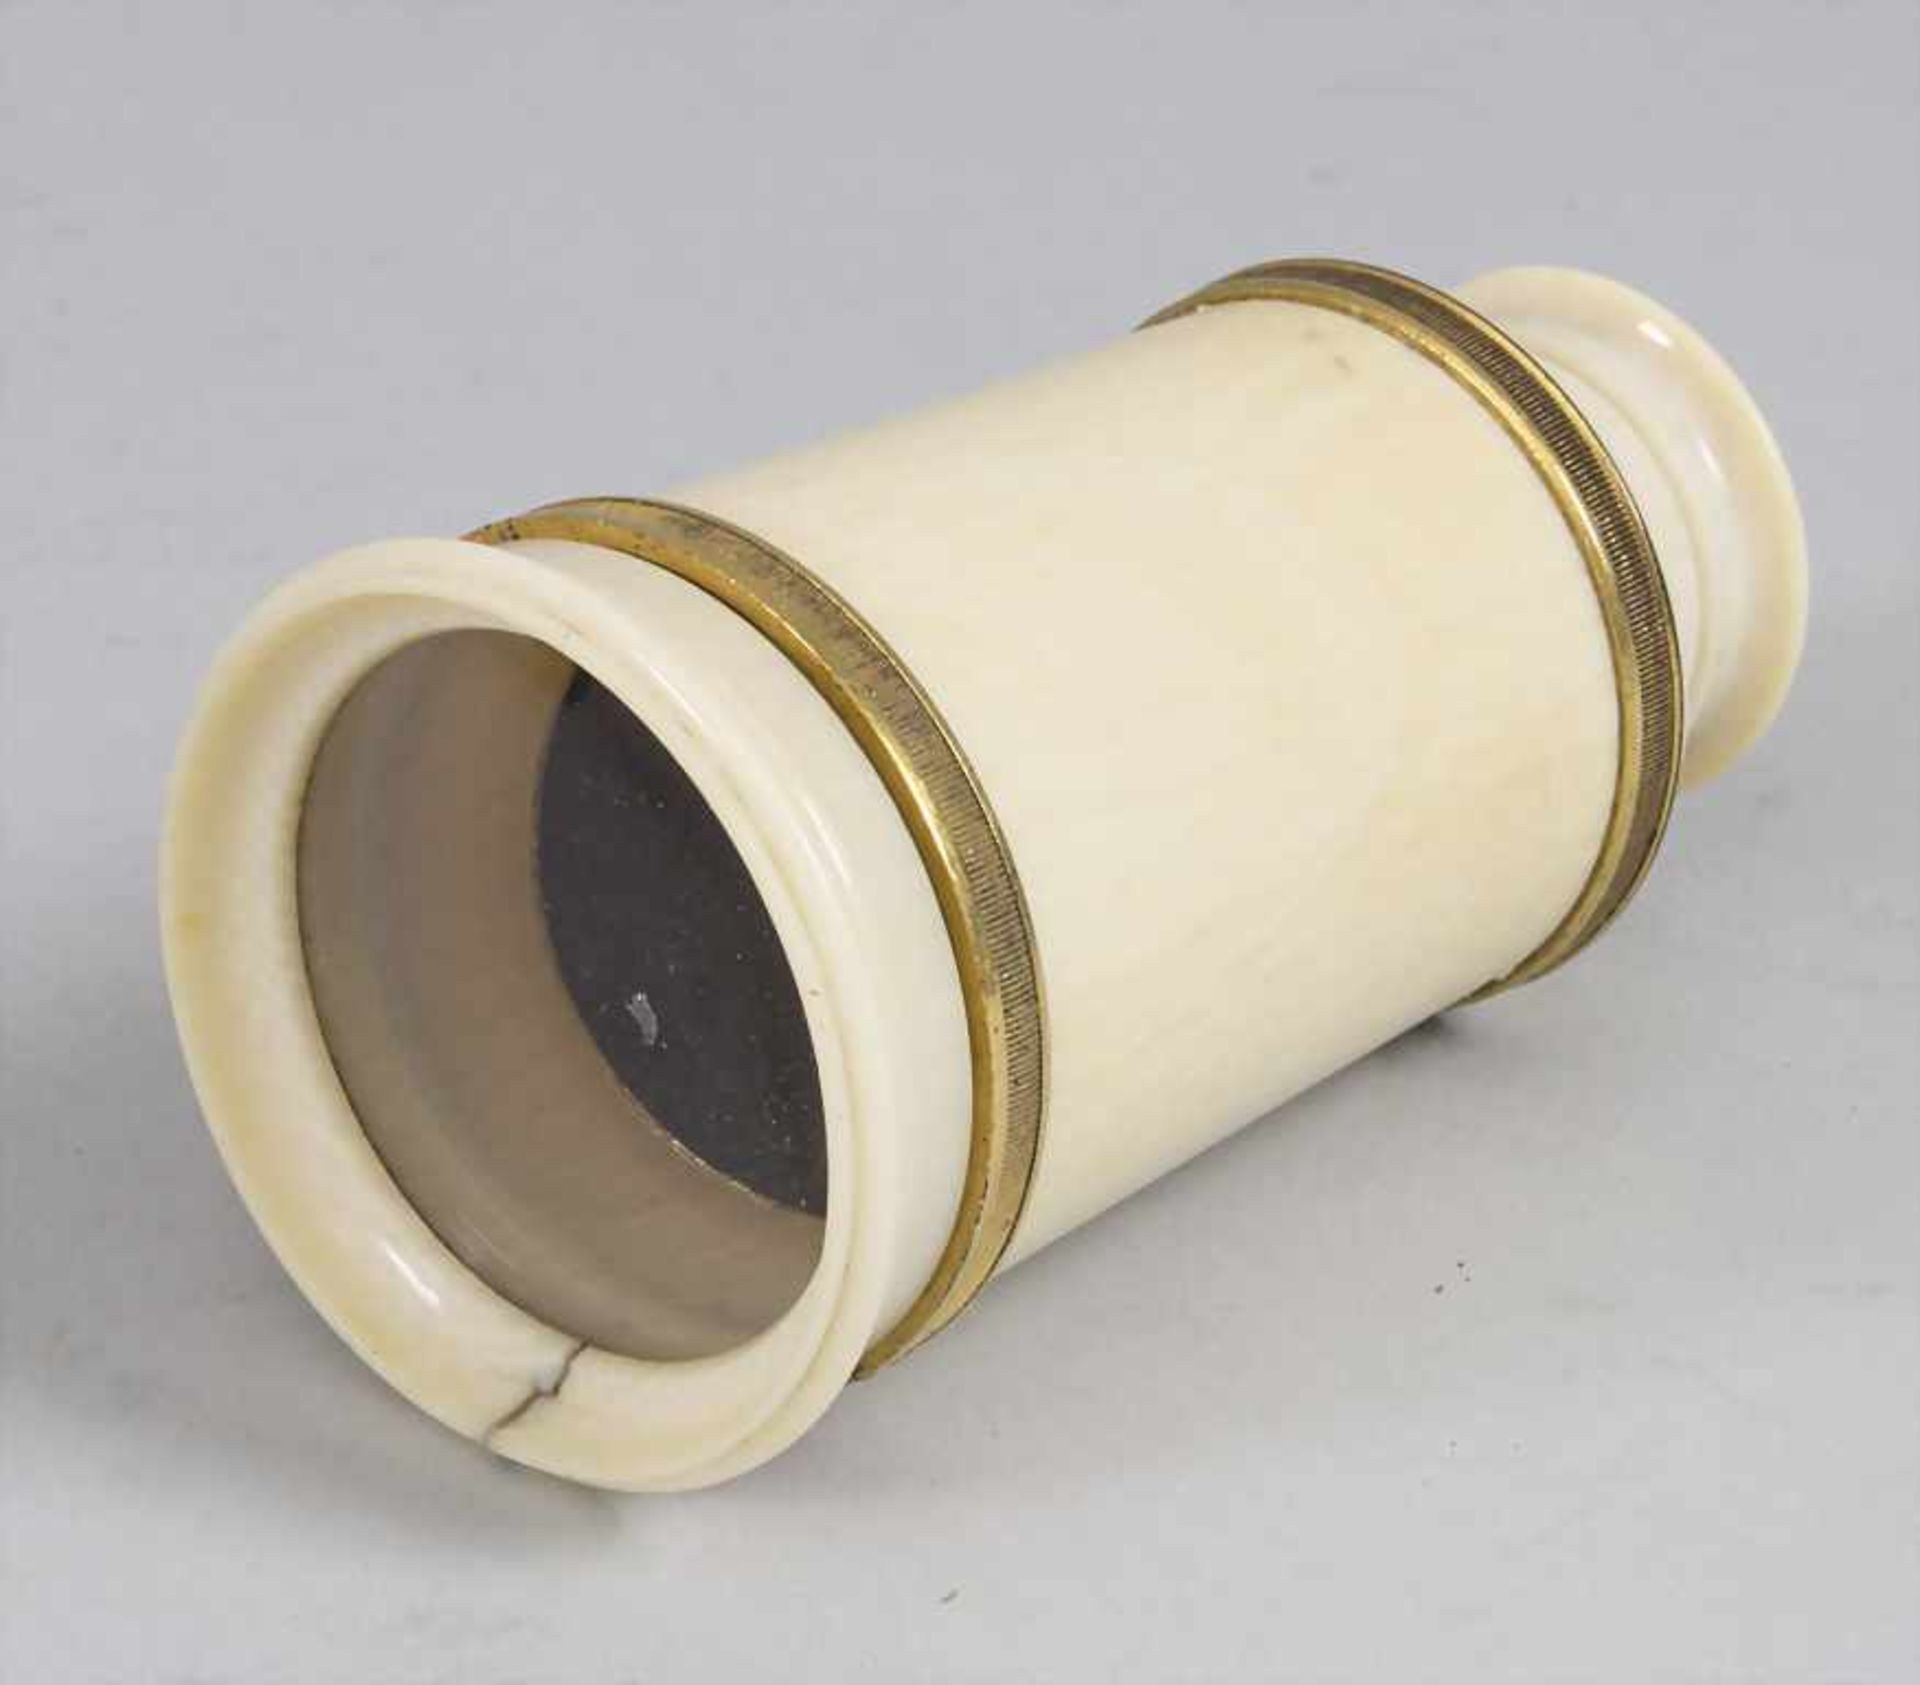 Taschenfernrohr / A pocket telescope, G. Adams, London, um 1780Material: Elfenbein, Me